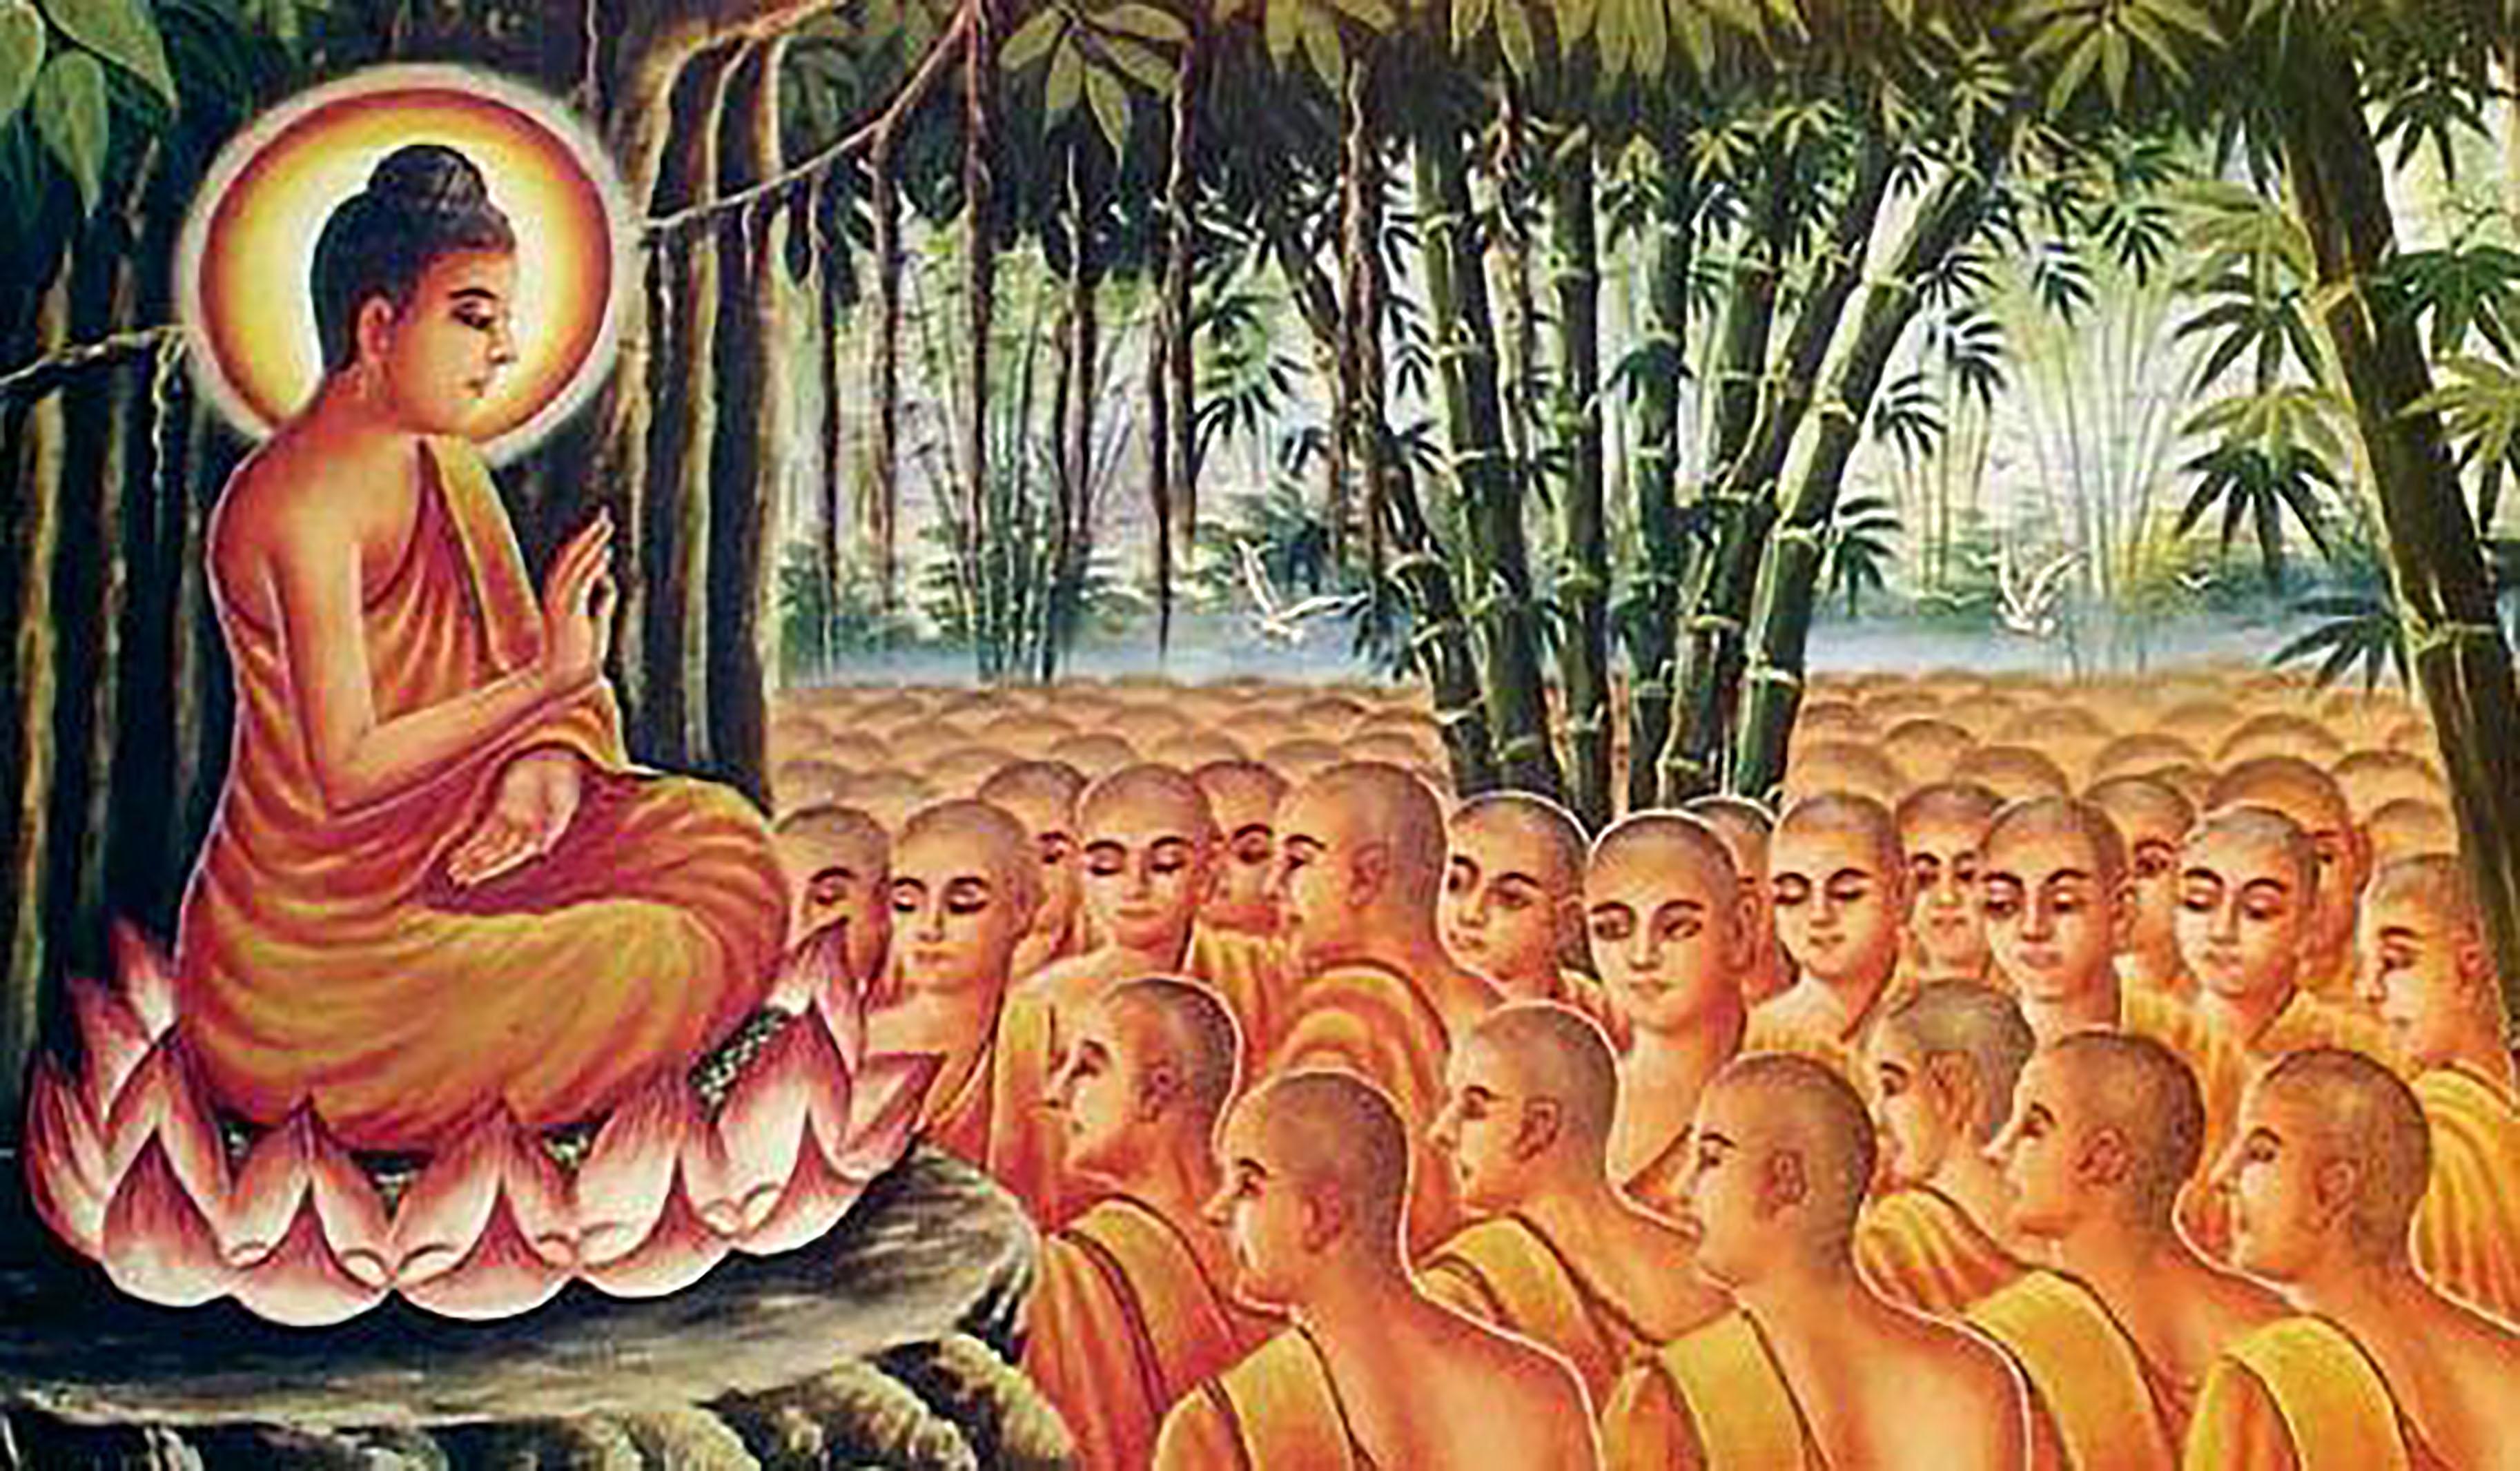 Проповедь будды. Праздник Макха Буча. Макха Буча буддийские праздники. Будда Шакьямуни ученики Будды. Макха Буча в Таиланде.